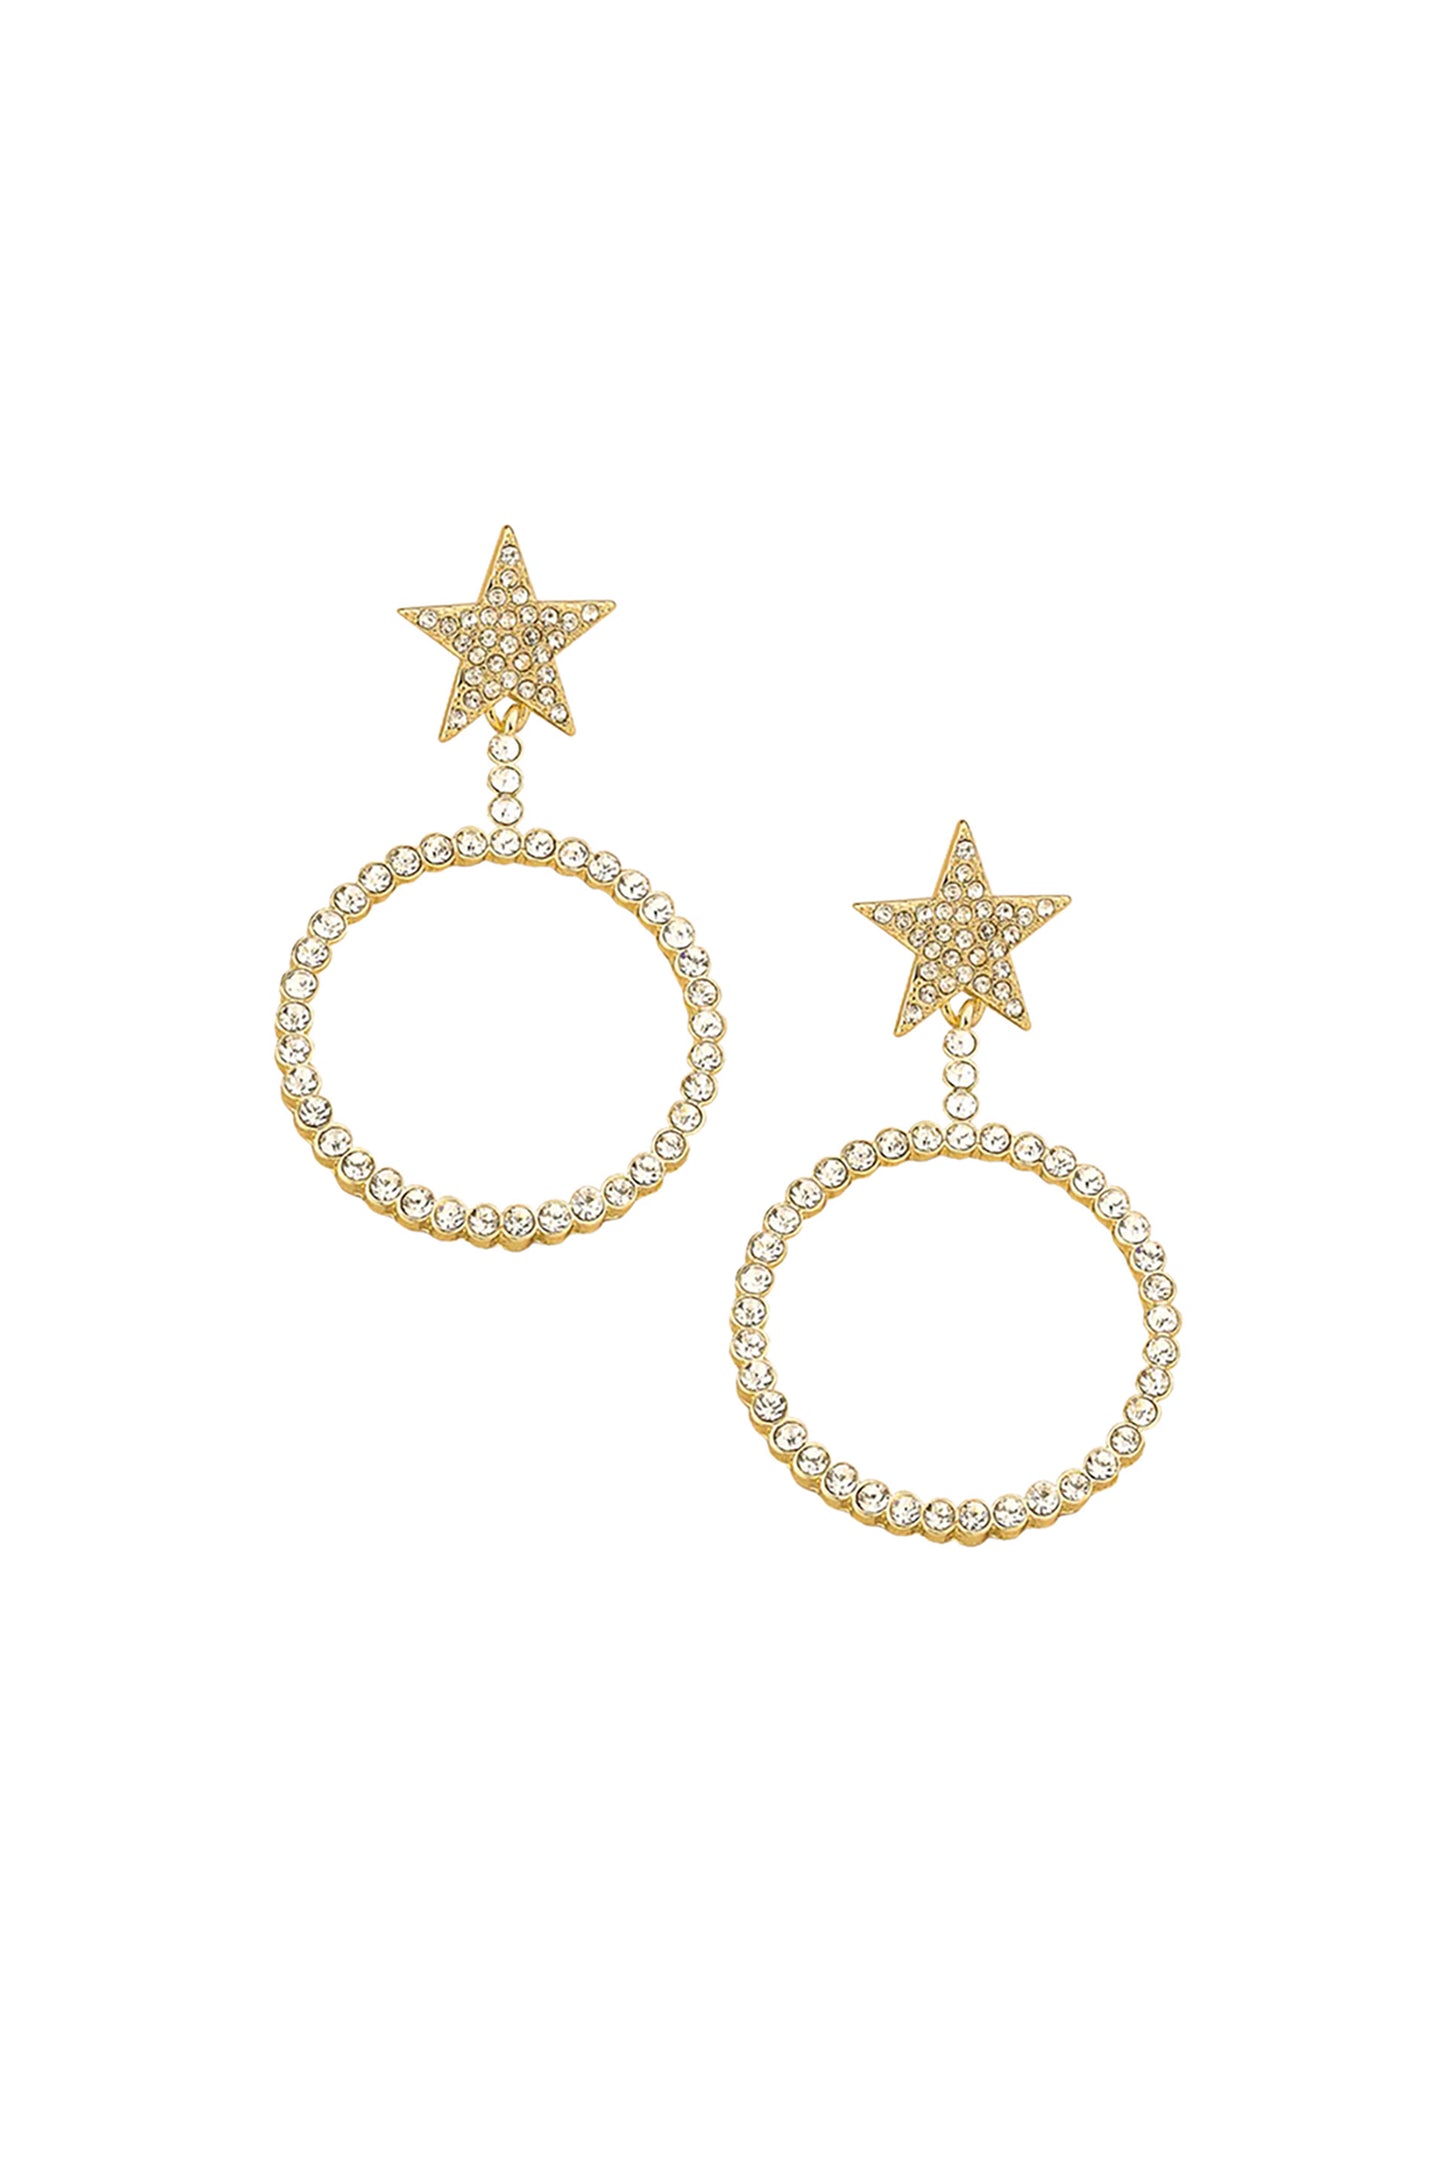 Spotlight Starlight 18k Gold Plated Crystal Earrings on white